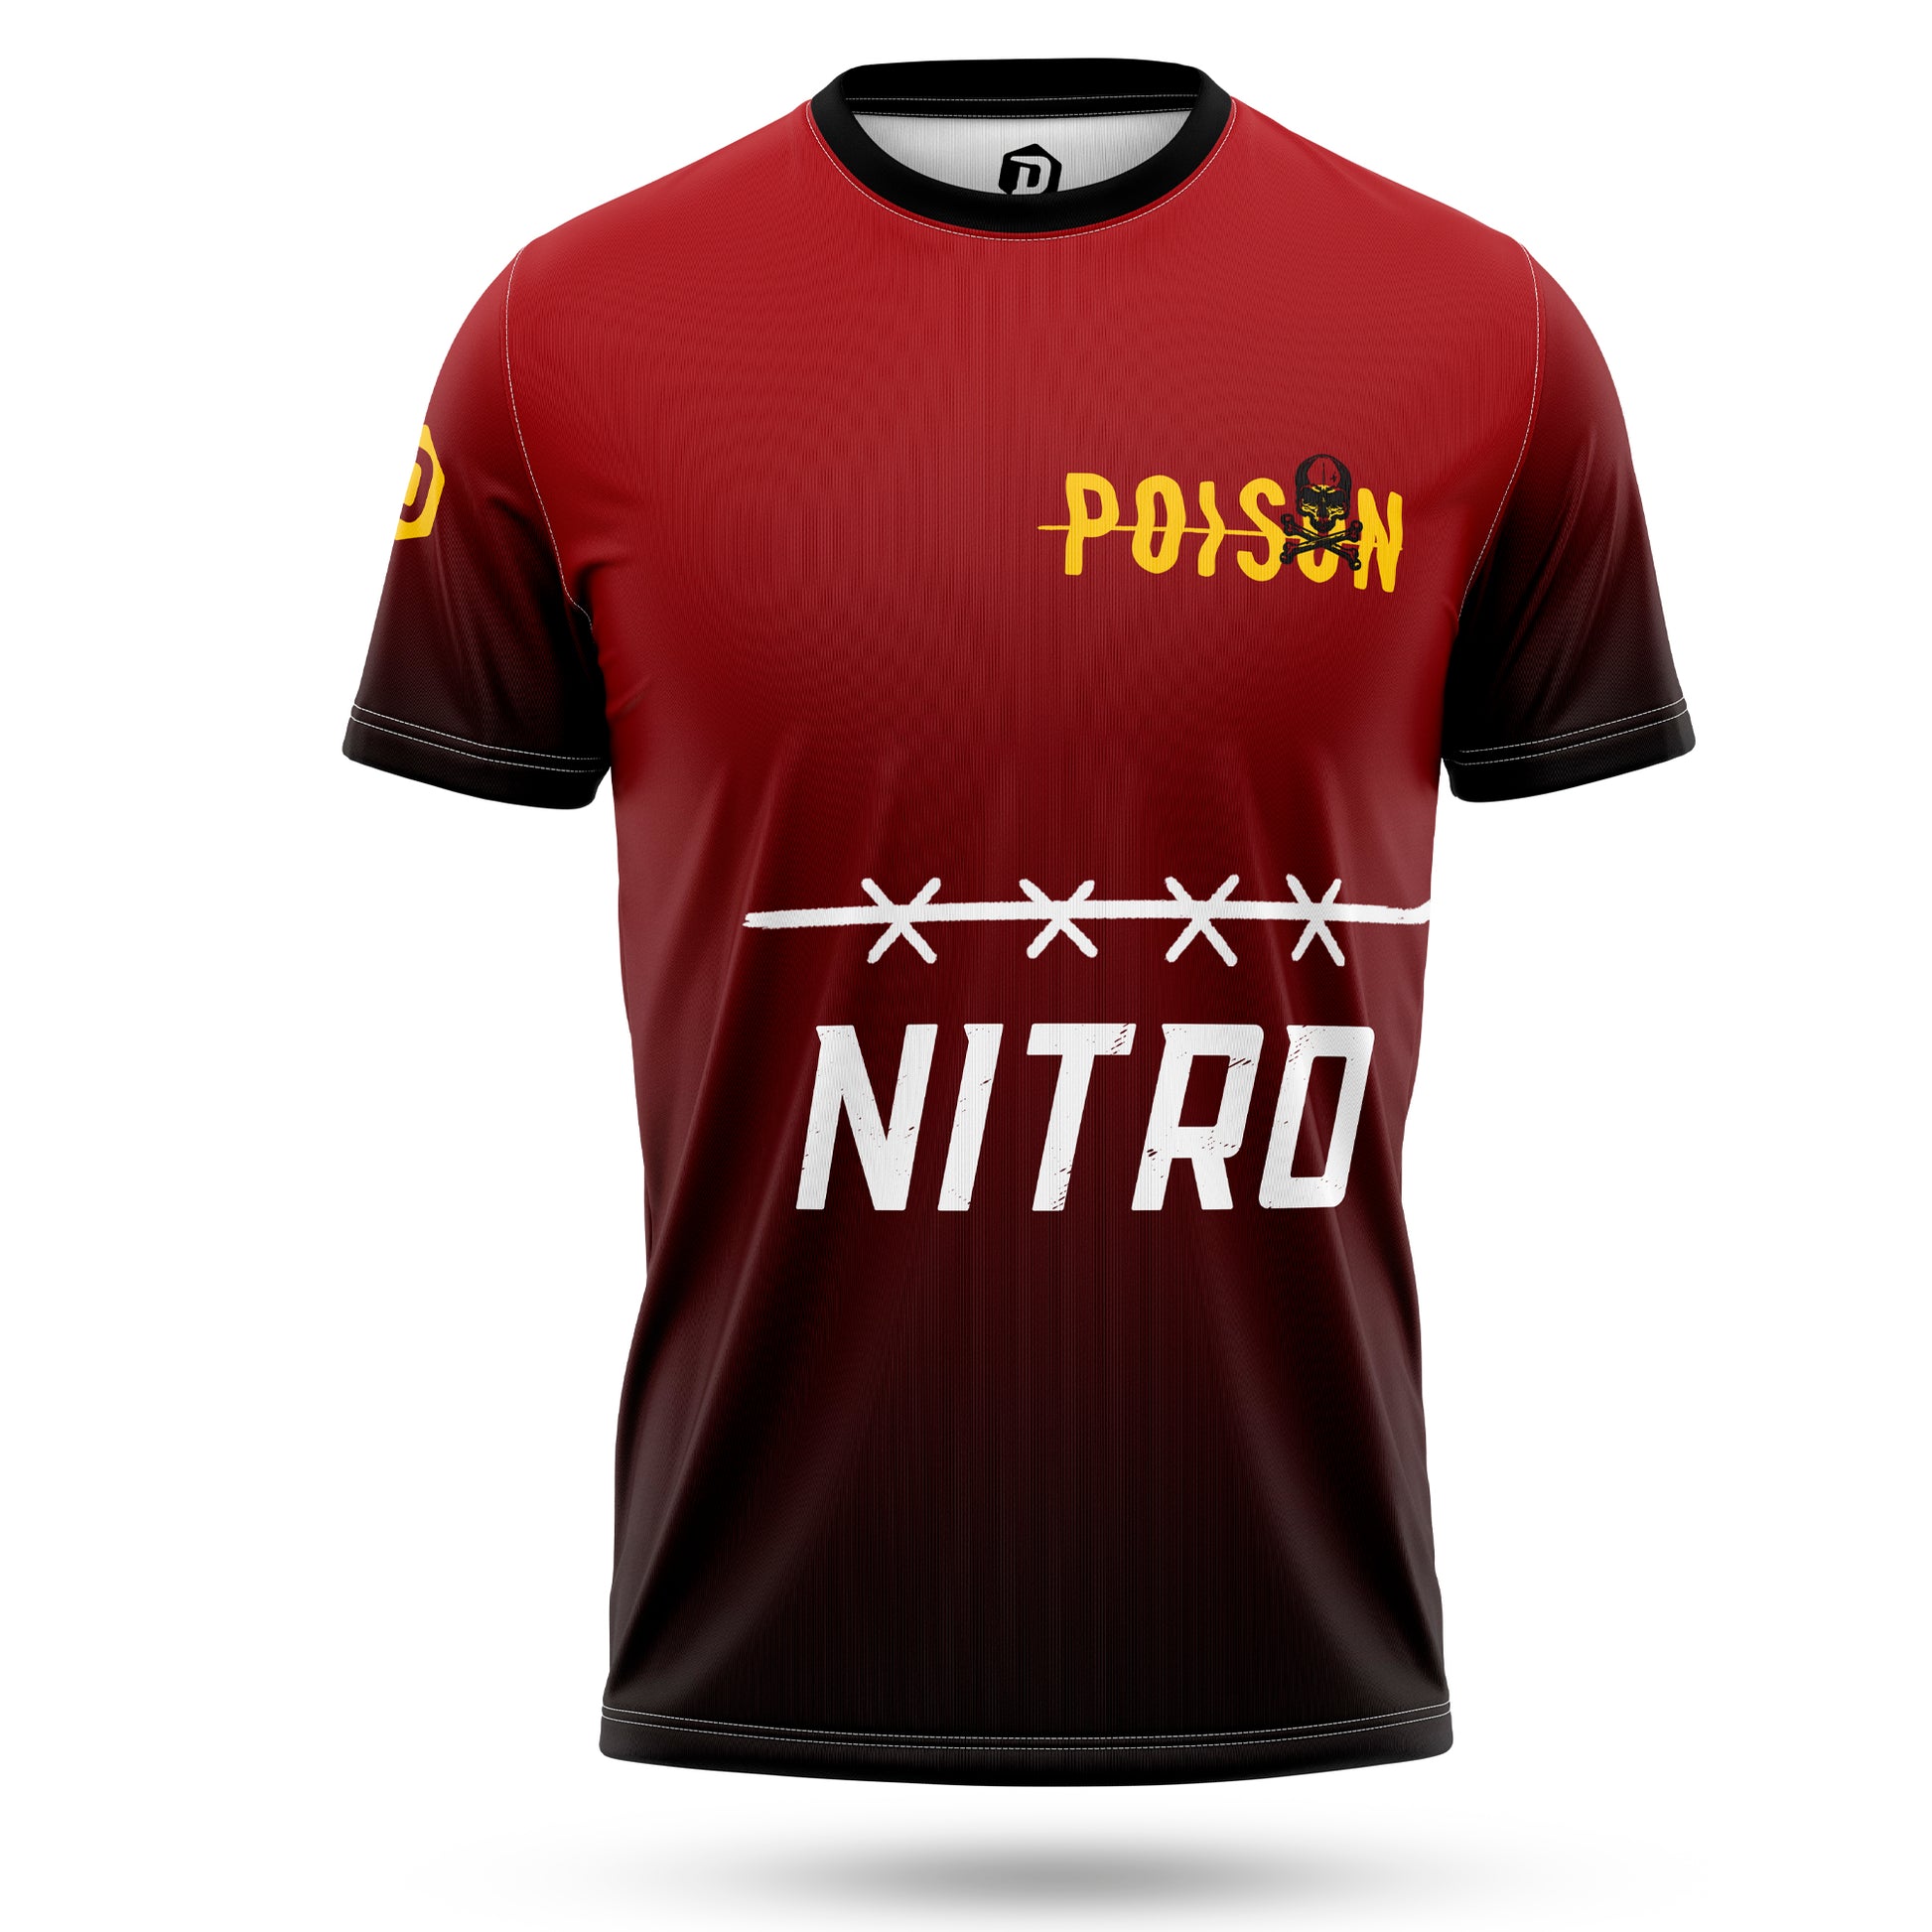 Camiseta técnica NITRO POISON™ - DOPAMINEOFICIAL